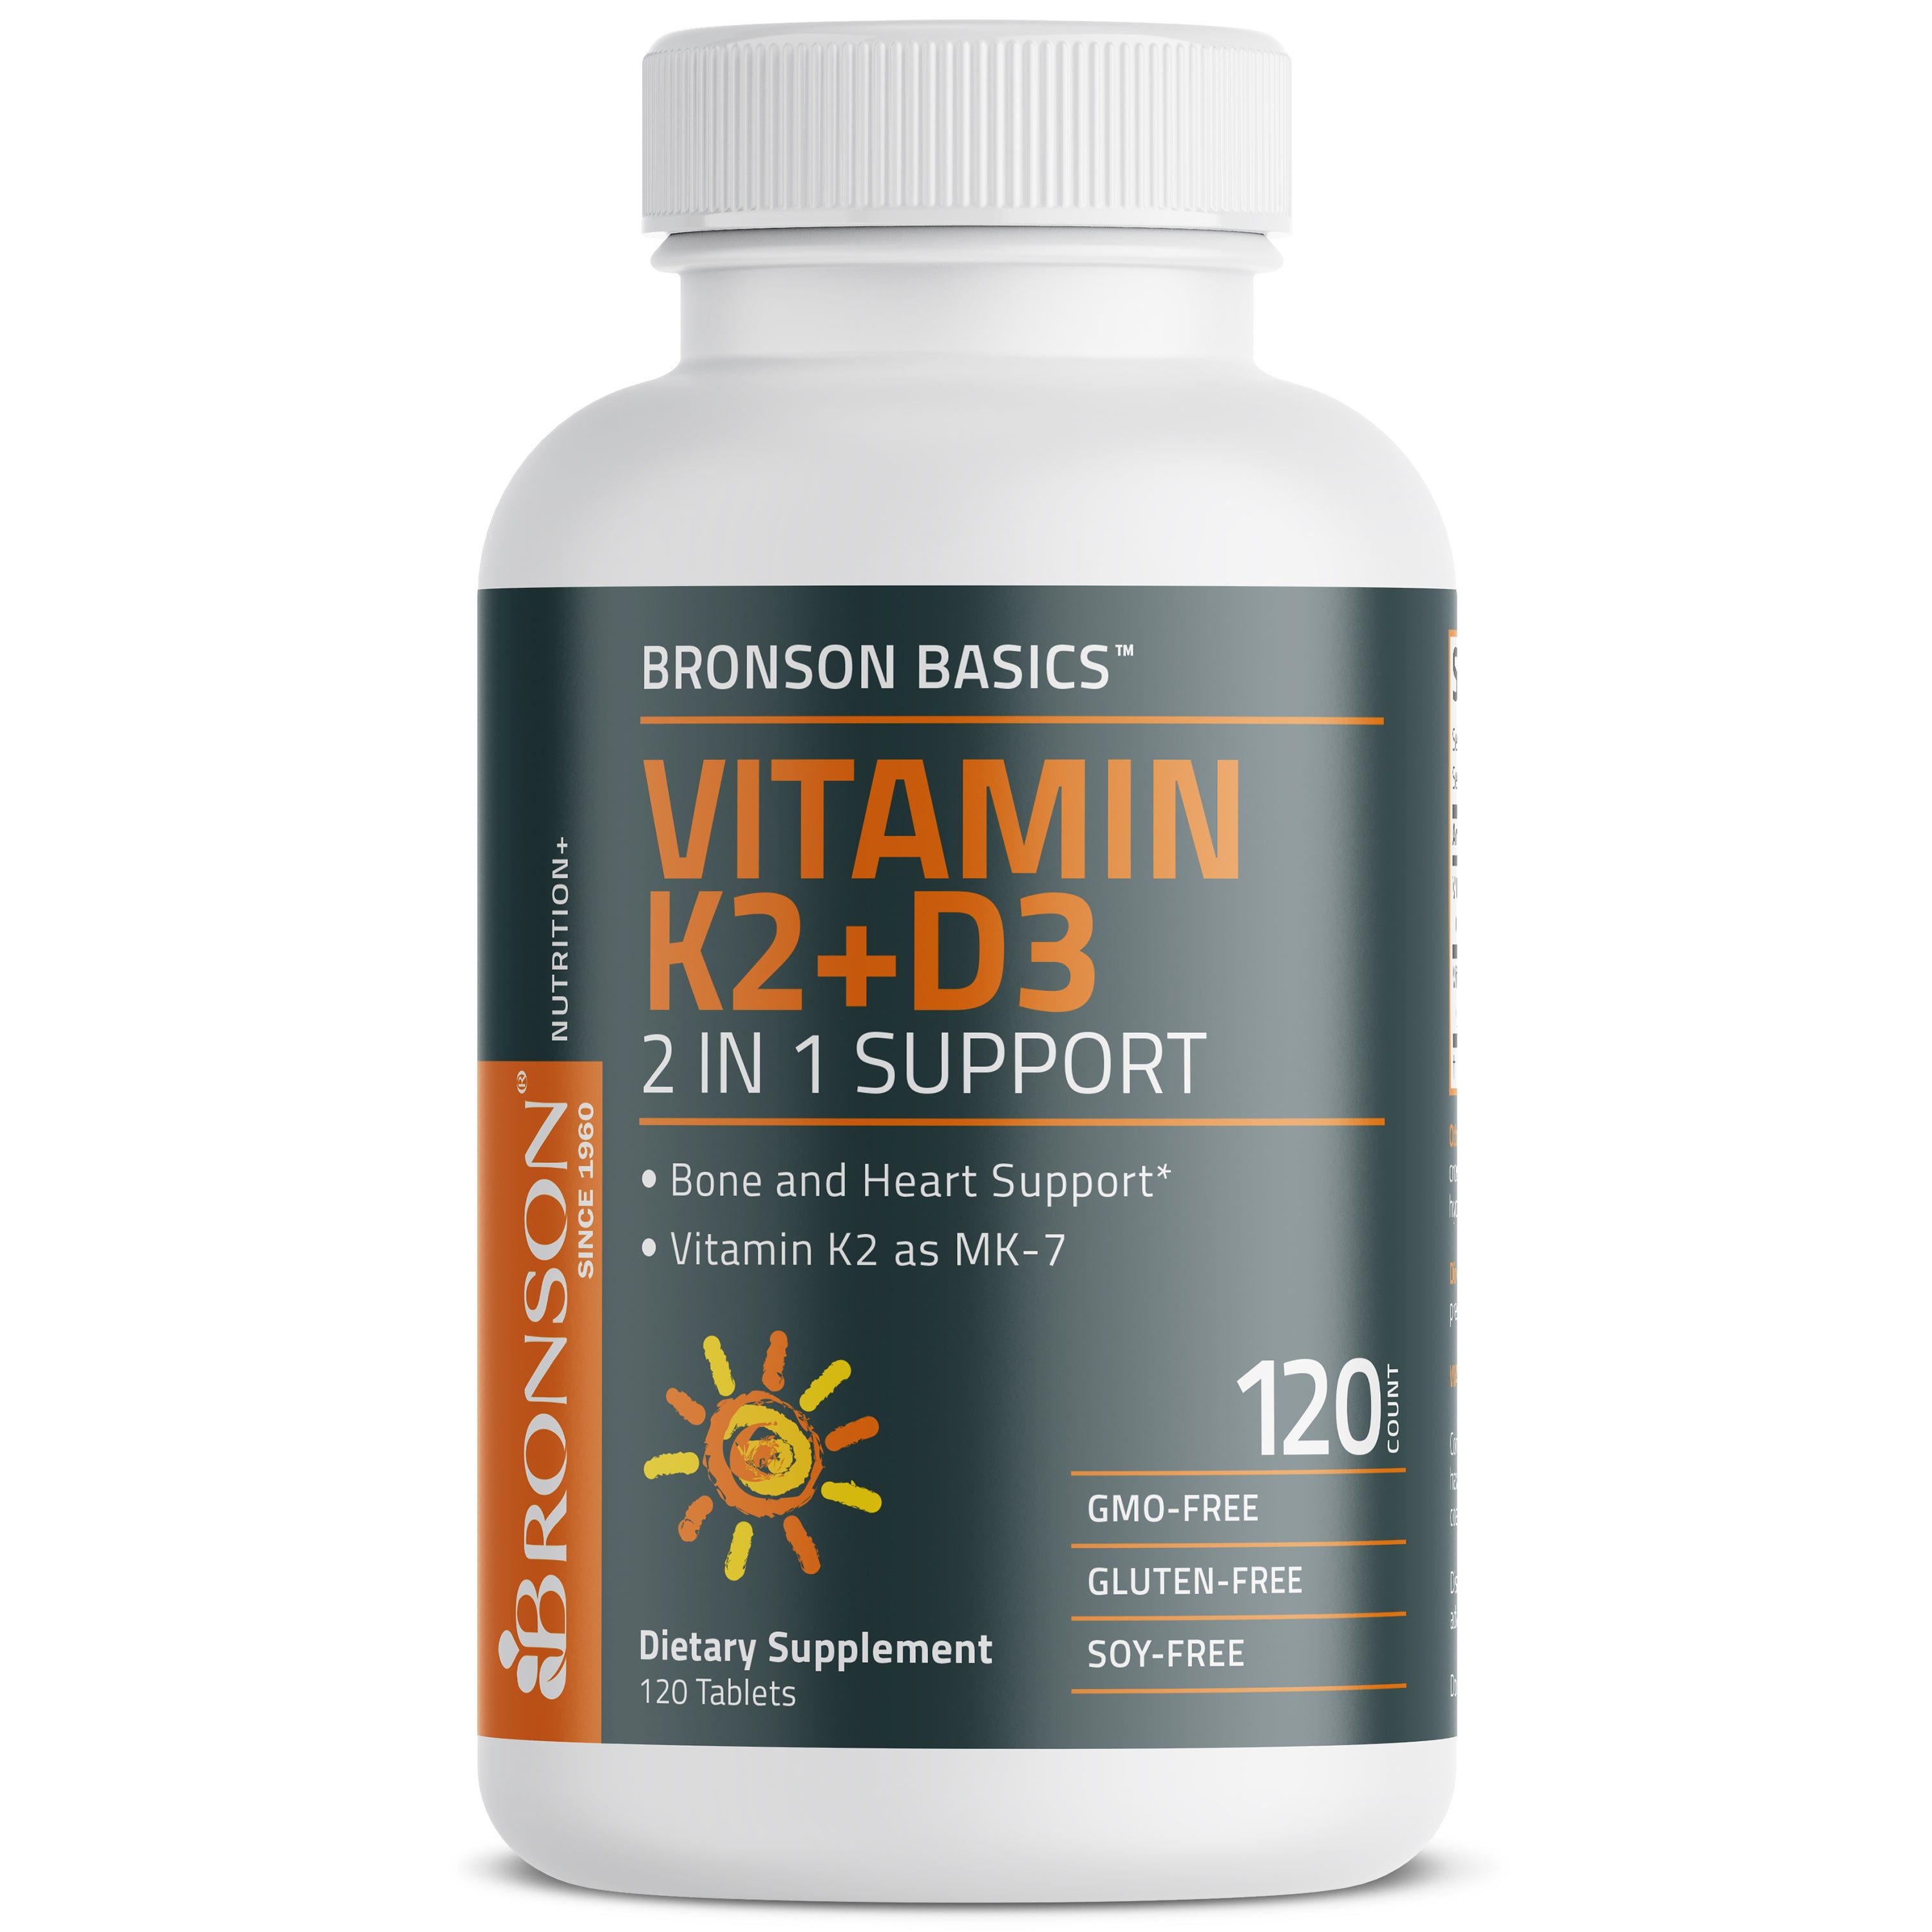 Vitamin K2 Plus D3 (MK7) view 3 of 6